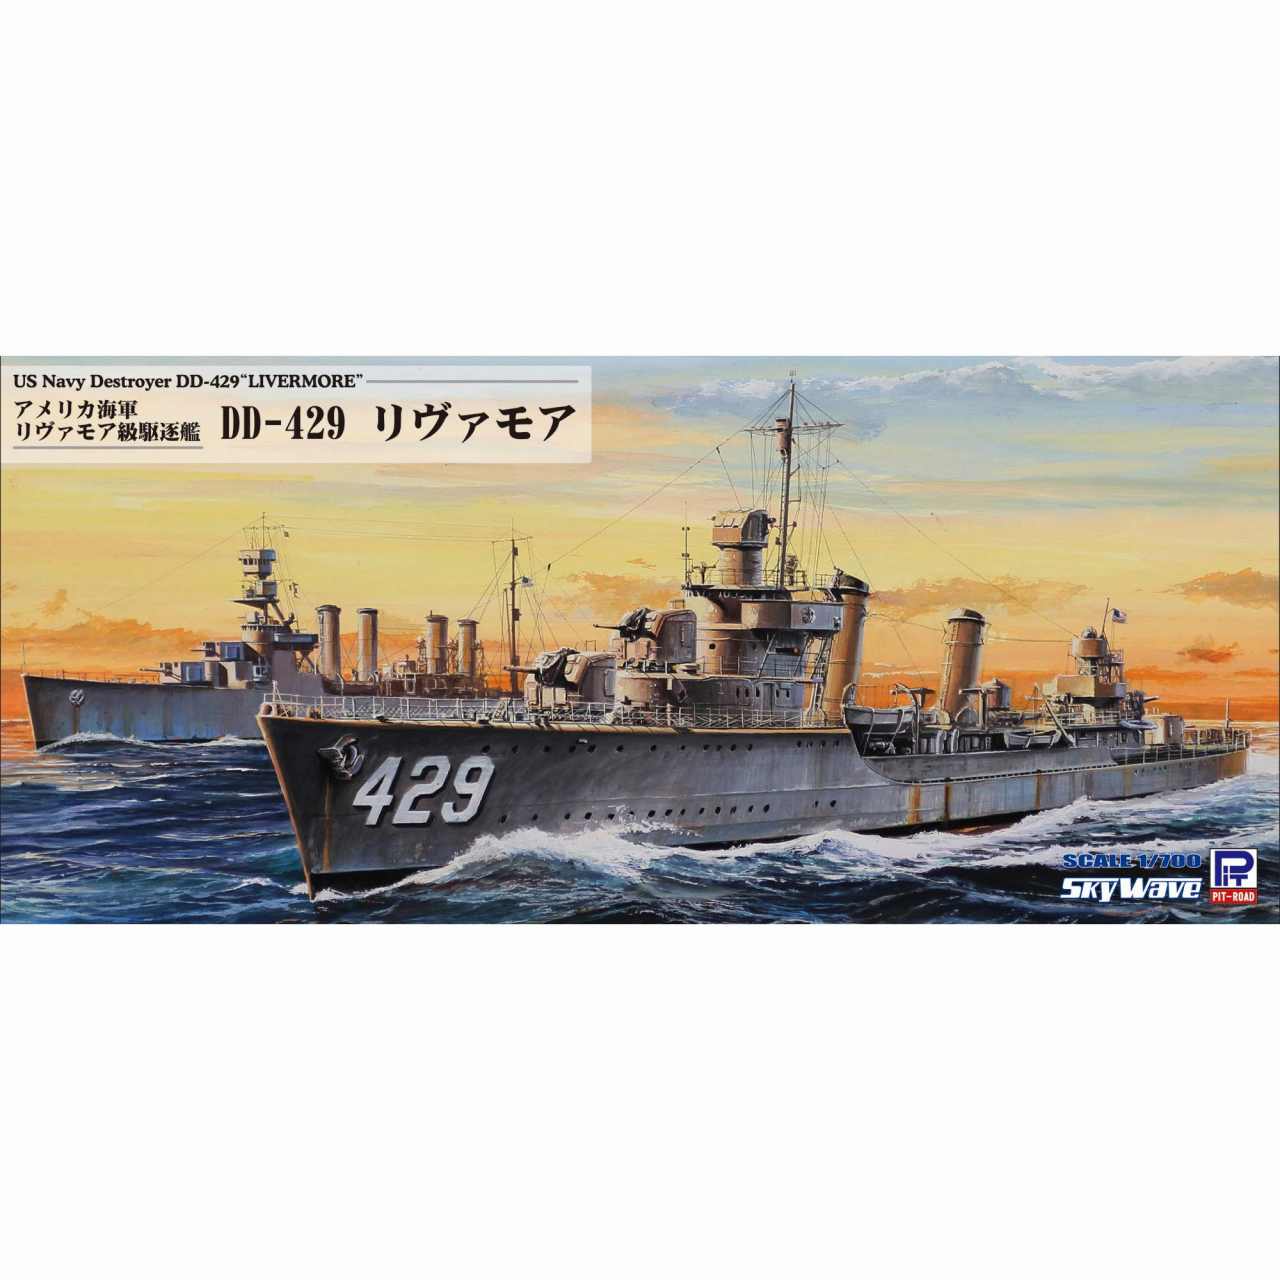 【新製品】W211 アメリカ海軍 リヴァモア級駆逐艦 DD-429 リヴァモア